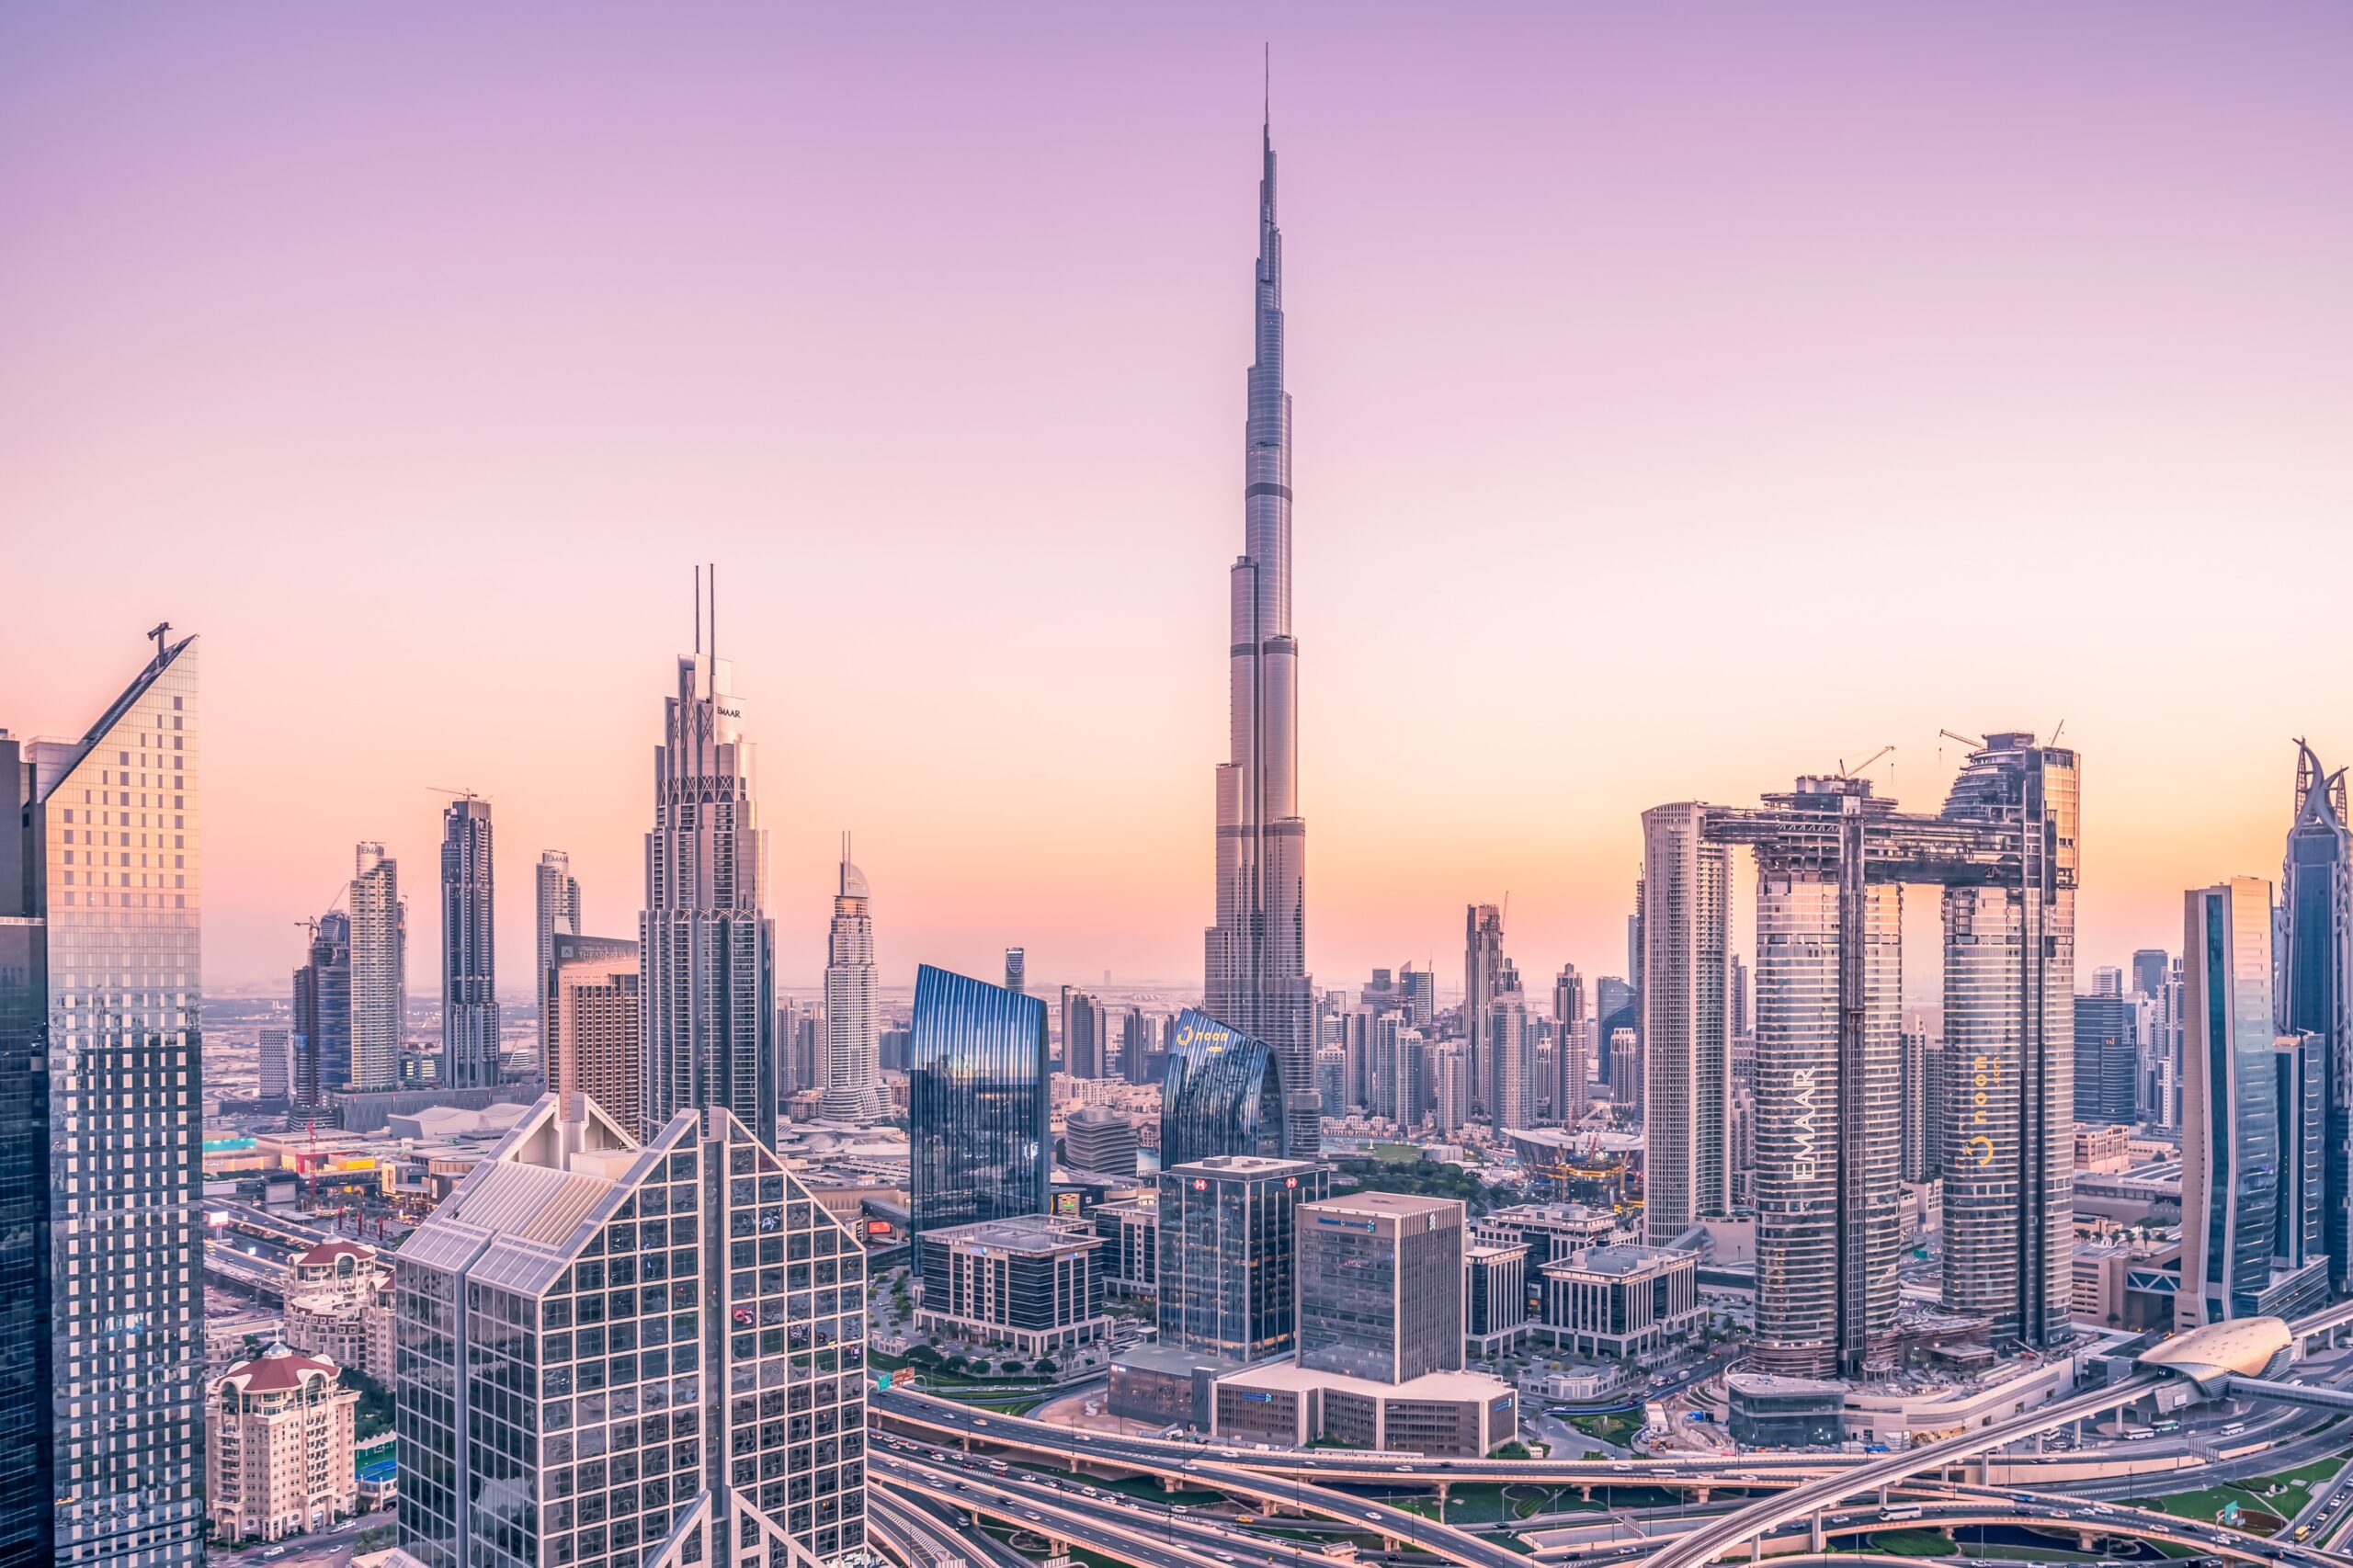 Quốc tịch UAE dành cho người nước ngoài UAE: Ai có thể nộp đơn và làm thế nào?